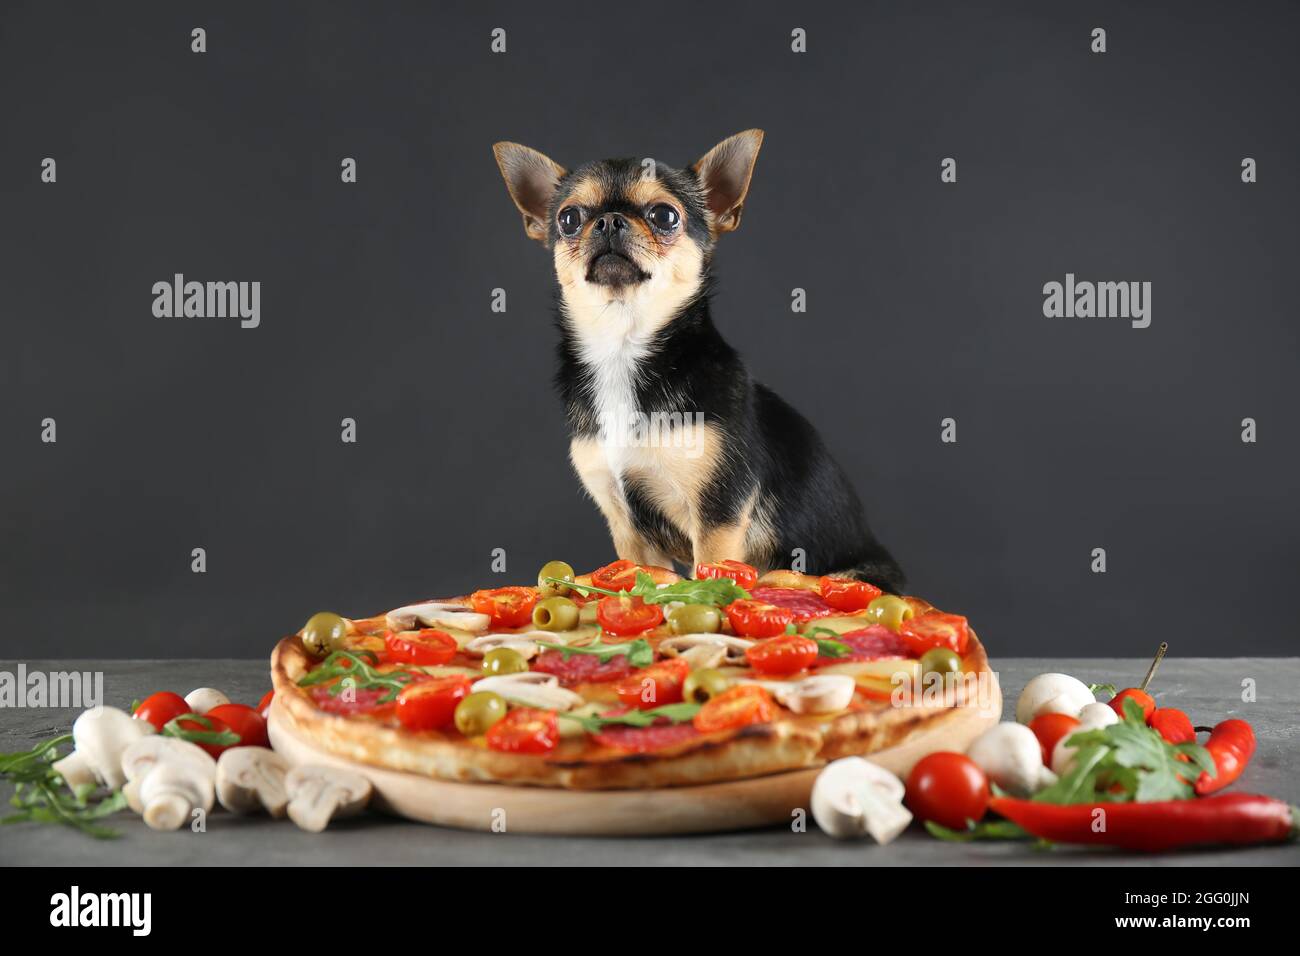 Kleiner chihuahua Hund mit Pizza auf grauem Hintergrund Stockfotografie -  Alamy